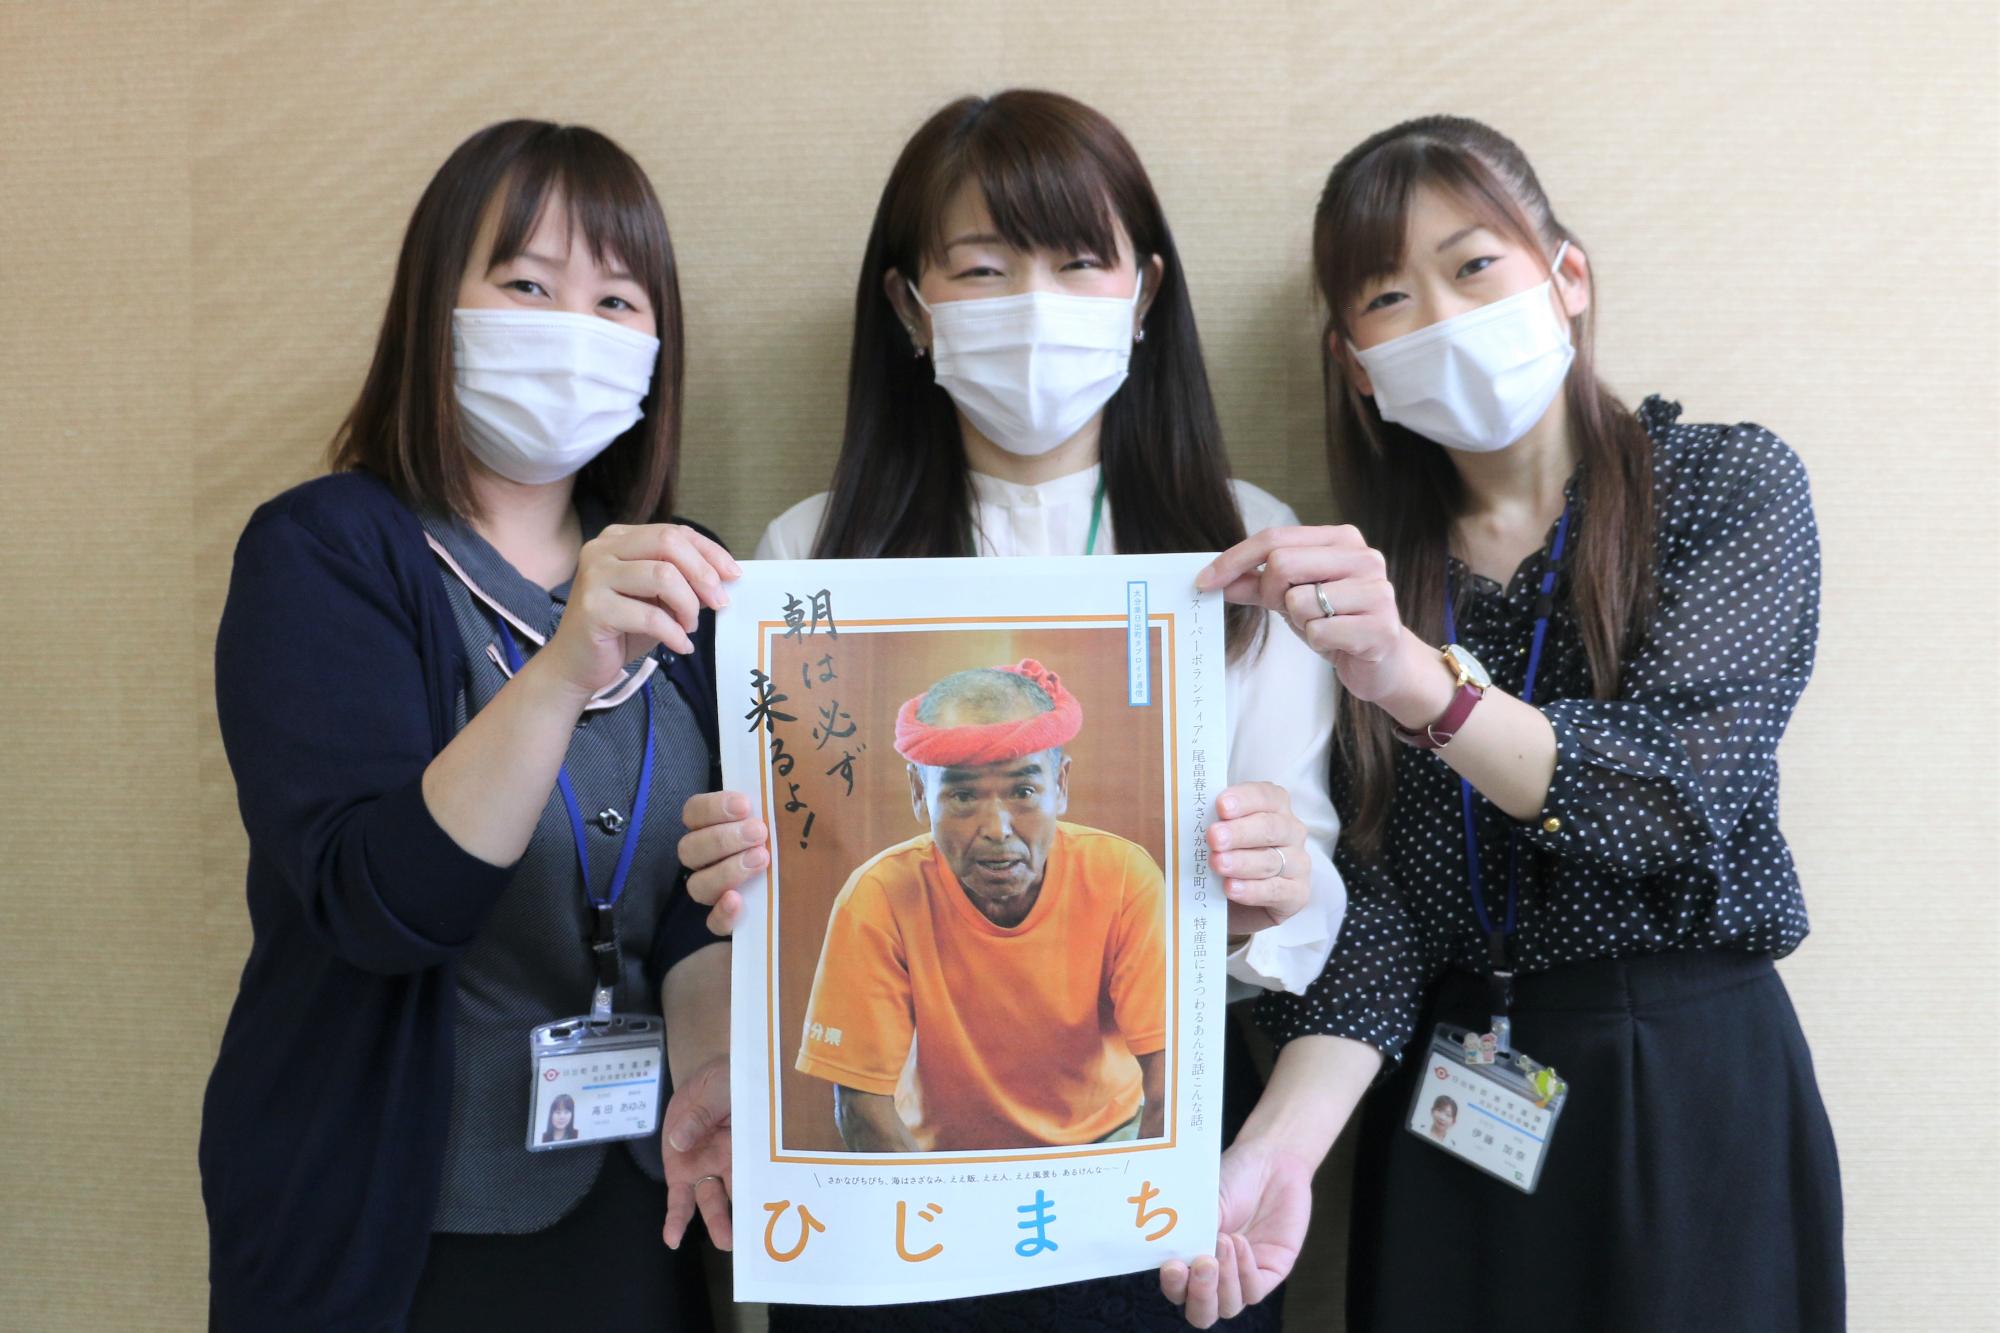 スーパーボランティア尾畠春夫さんが表紙の冊子を持った女性3人の写真